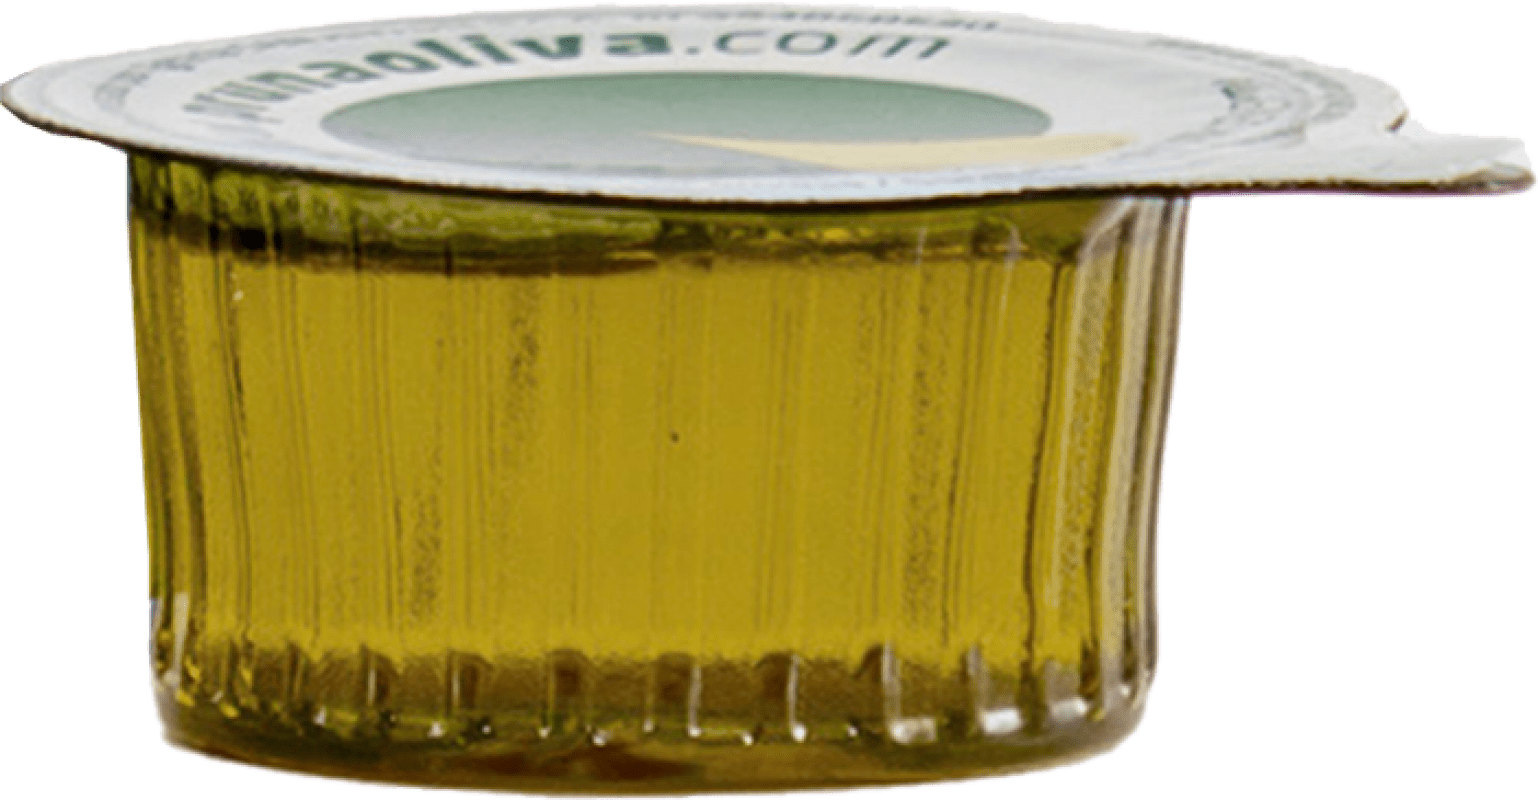 14,95 € Envoi gratuit | Boîte de 120 unités Huile d'Olive Sacesa Virgen Monodosis 10 ml La Rioja Espagne